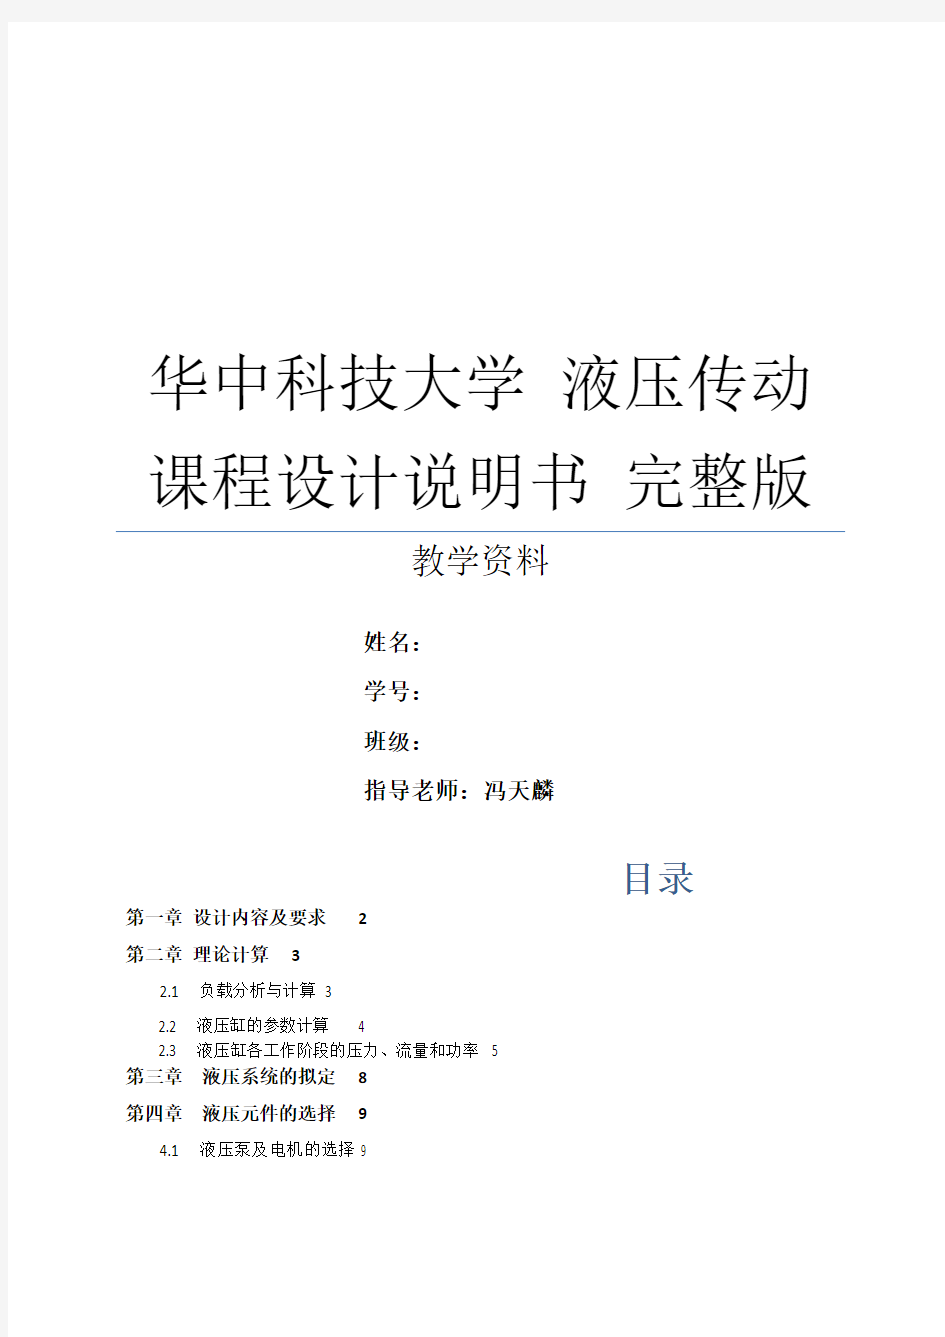 华中科技大学 液压传动课程设计说明书 完整版